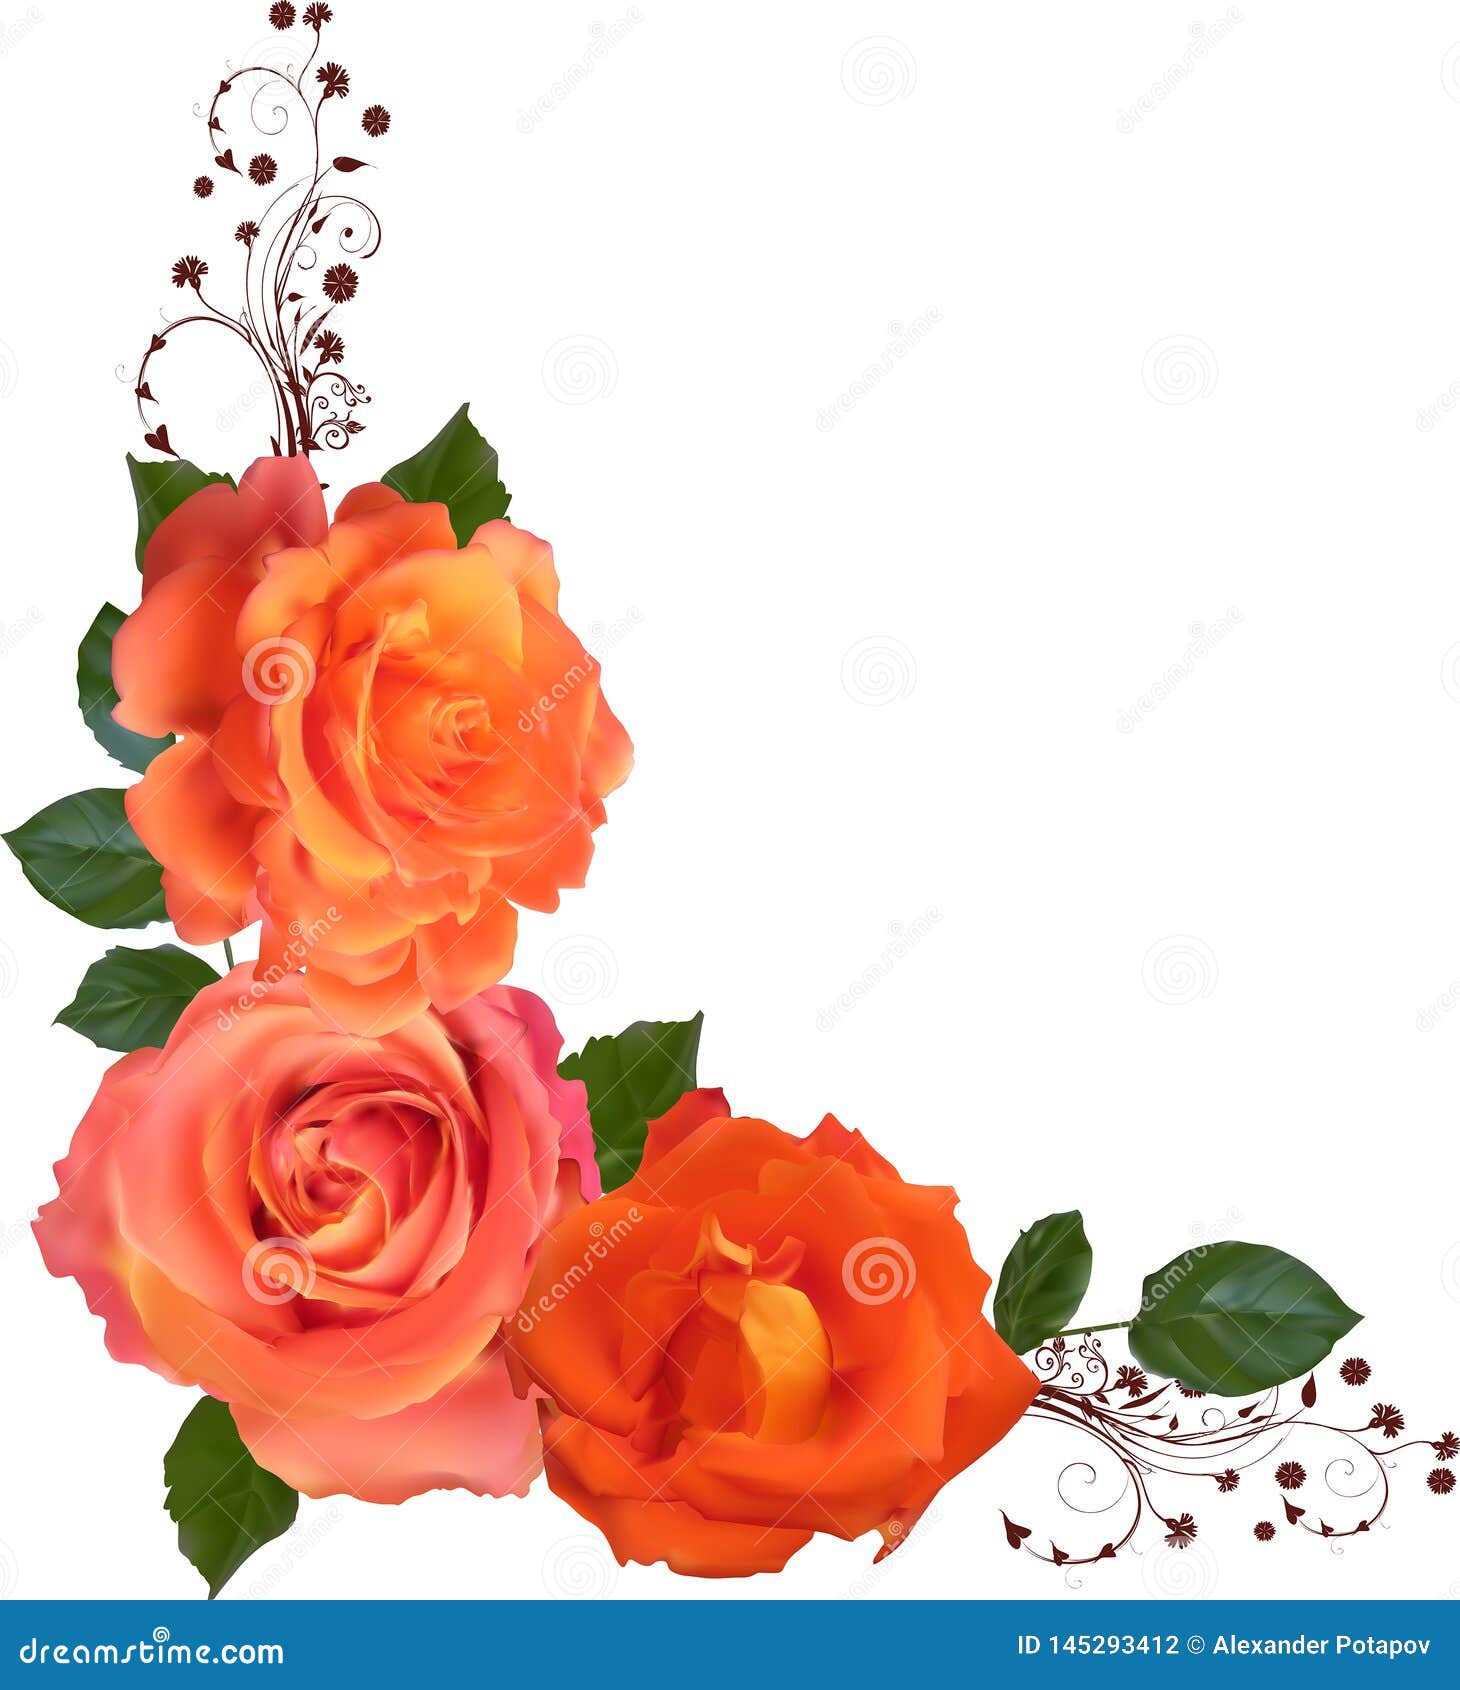 Hình vẽ góc trang trí ba bông hoa hồng màu cam sáng là một lựa chọn tuyệt vời cho những ai yêu thích giản đơn và thanh lịch. Với những chiếc hoa tươi đẹp và phong cách thẩm mỹ đơn giản, bạn sẽ cảm thấy thư giãn và đầy cảm hứng. Hãy cùng trang trí màn hình của mình bằng những hình ảnh hoa hồng màu cam sáng tạo động lực cho bạn nhé!